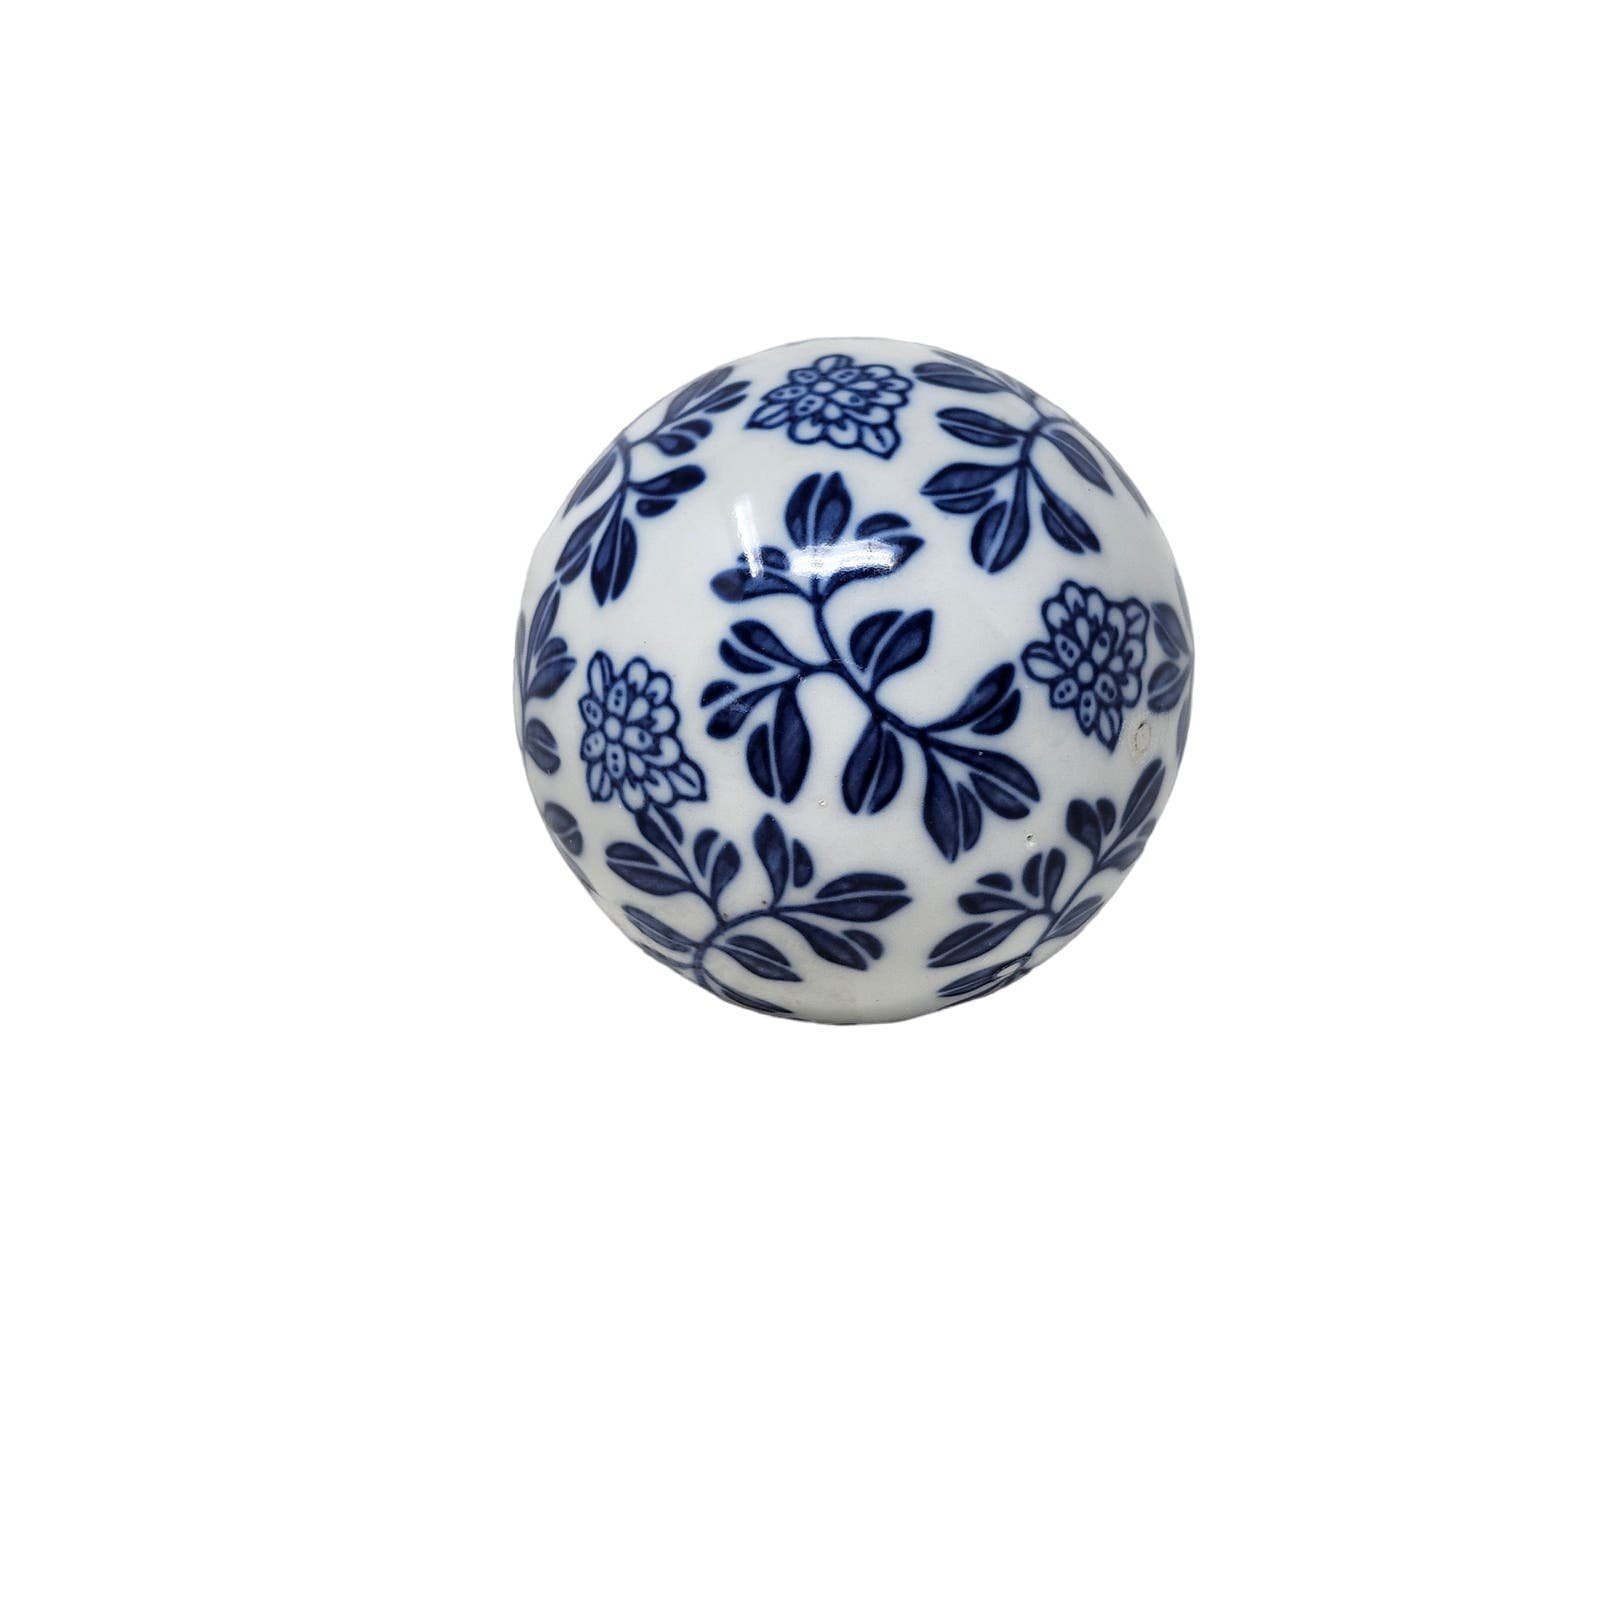 Gorgeous Handmade Porcelain Orb | Titled Victorian Azure Radiance Orb Og7mqhxMo